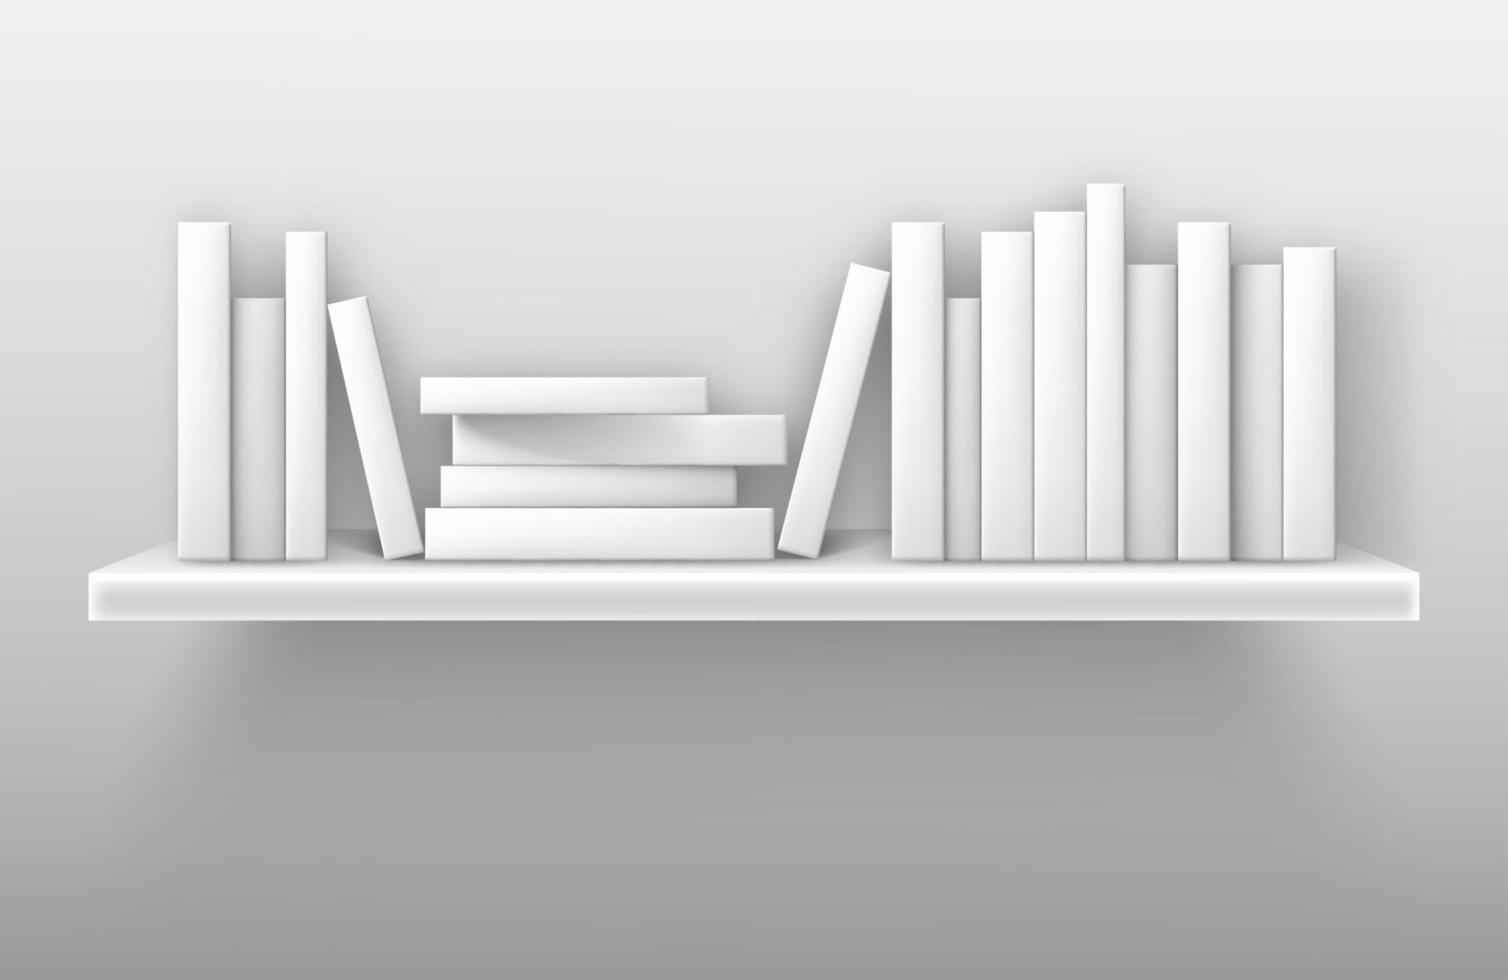 White bookshelf mockup, books on shelf in library vector